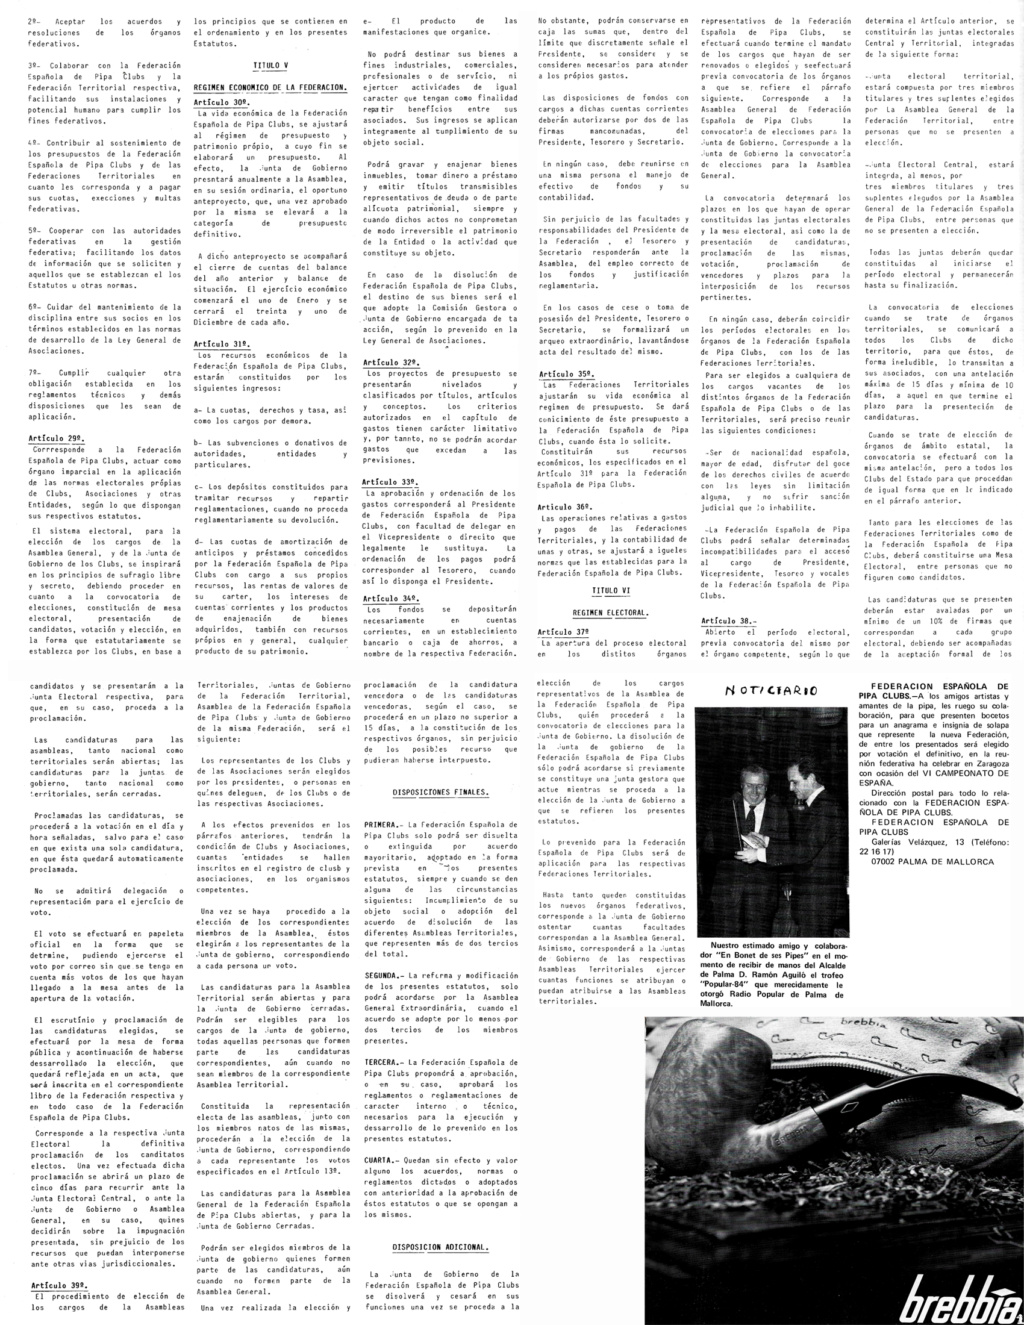 EL RINCON DE BONET - Página 16 15_1210